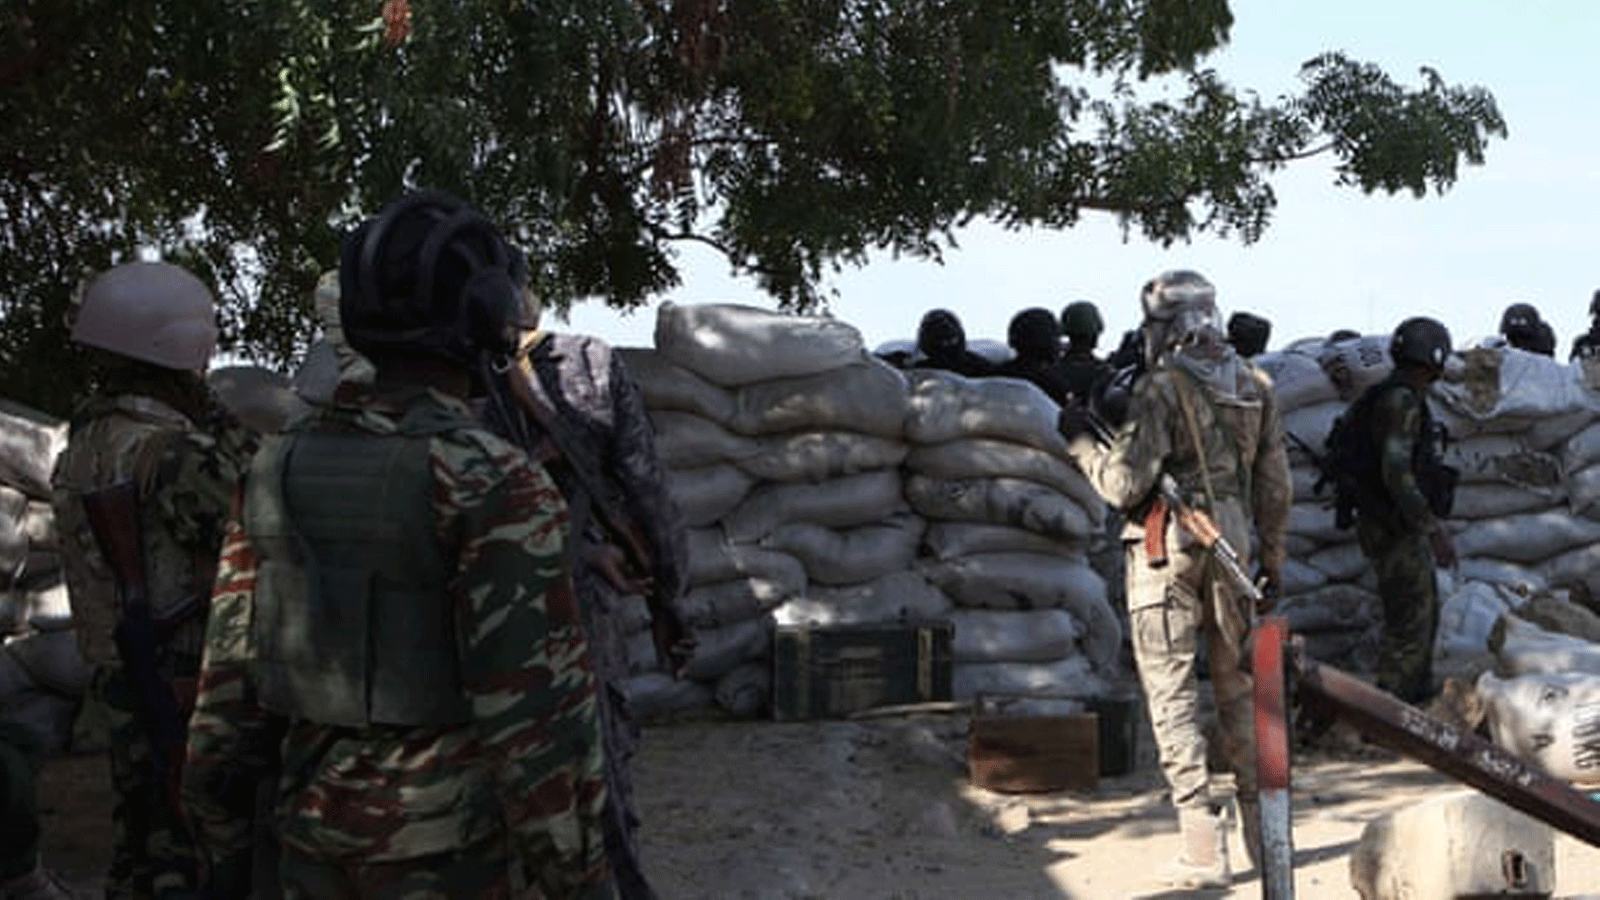 عناصر من الجيش حيث يقع المدنيون في مرمى النيران وسط الصراع العنيف بين الجيش والانفصاليين في الكاميرون